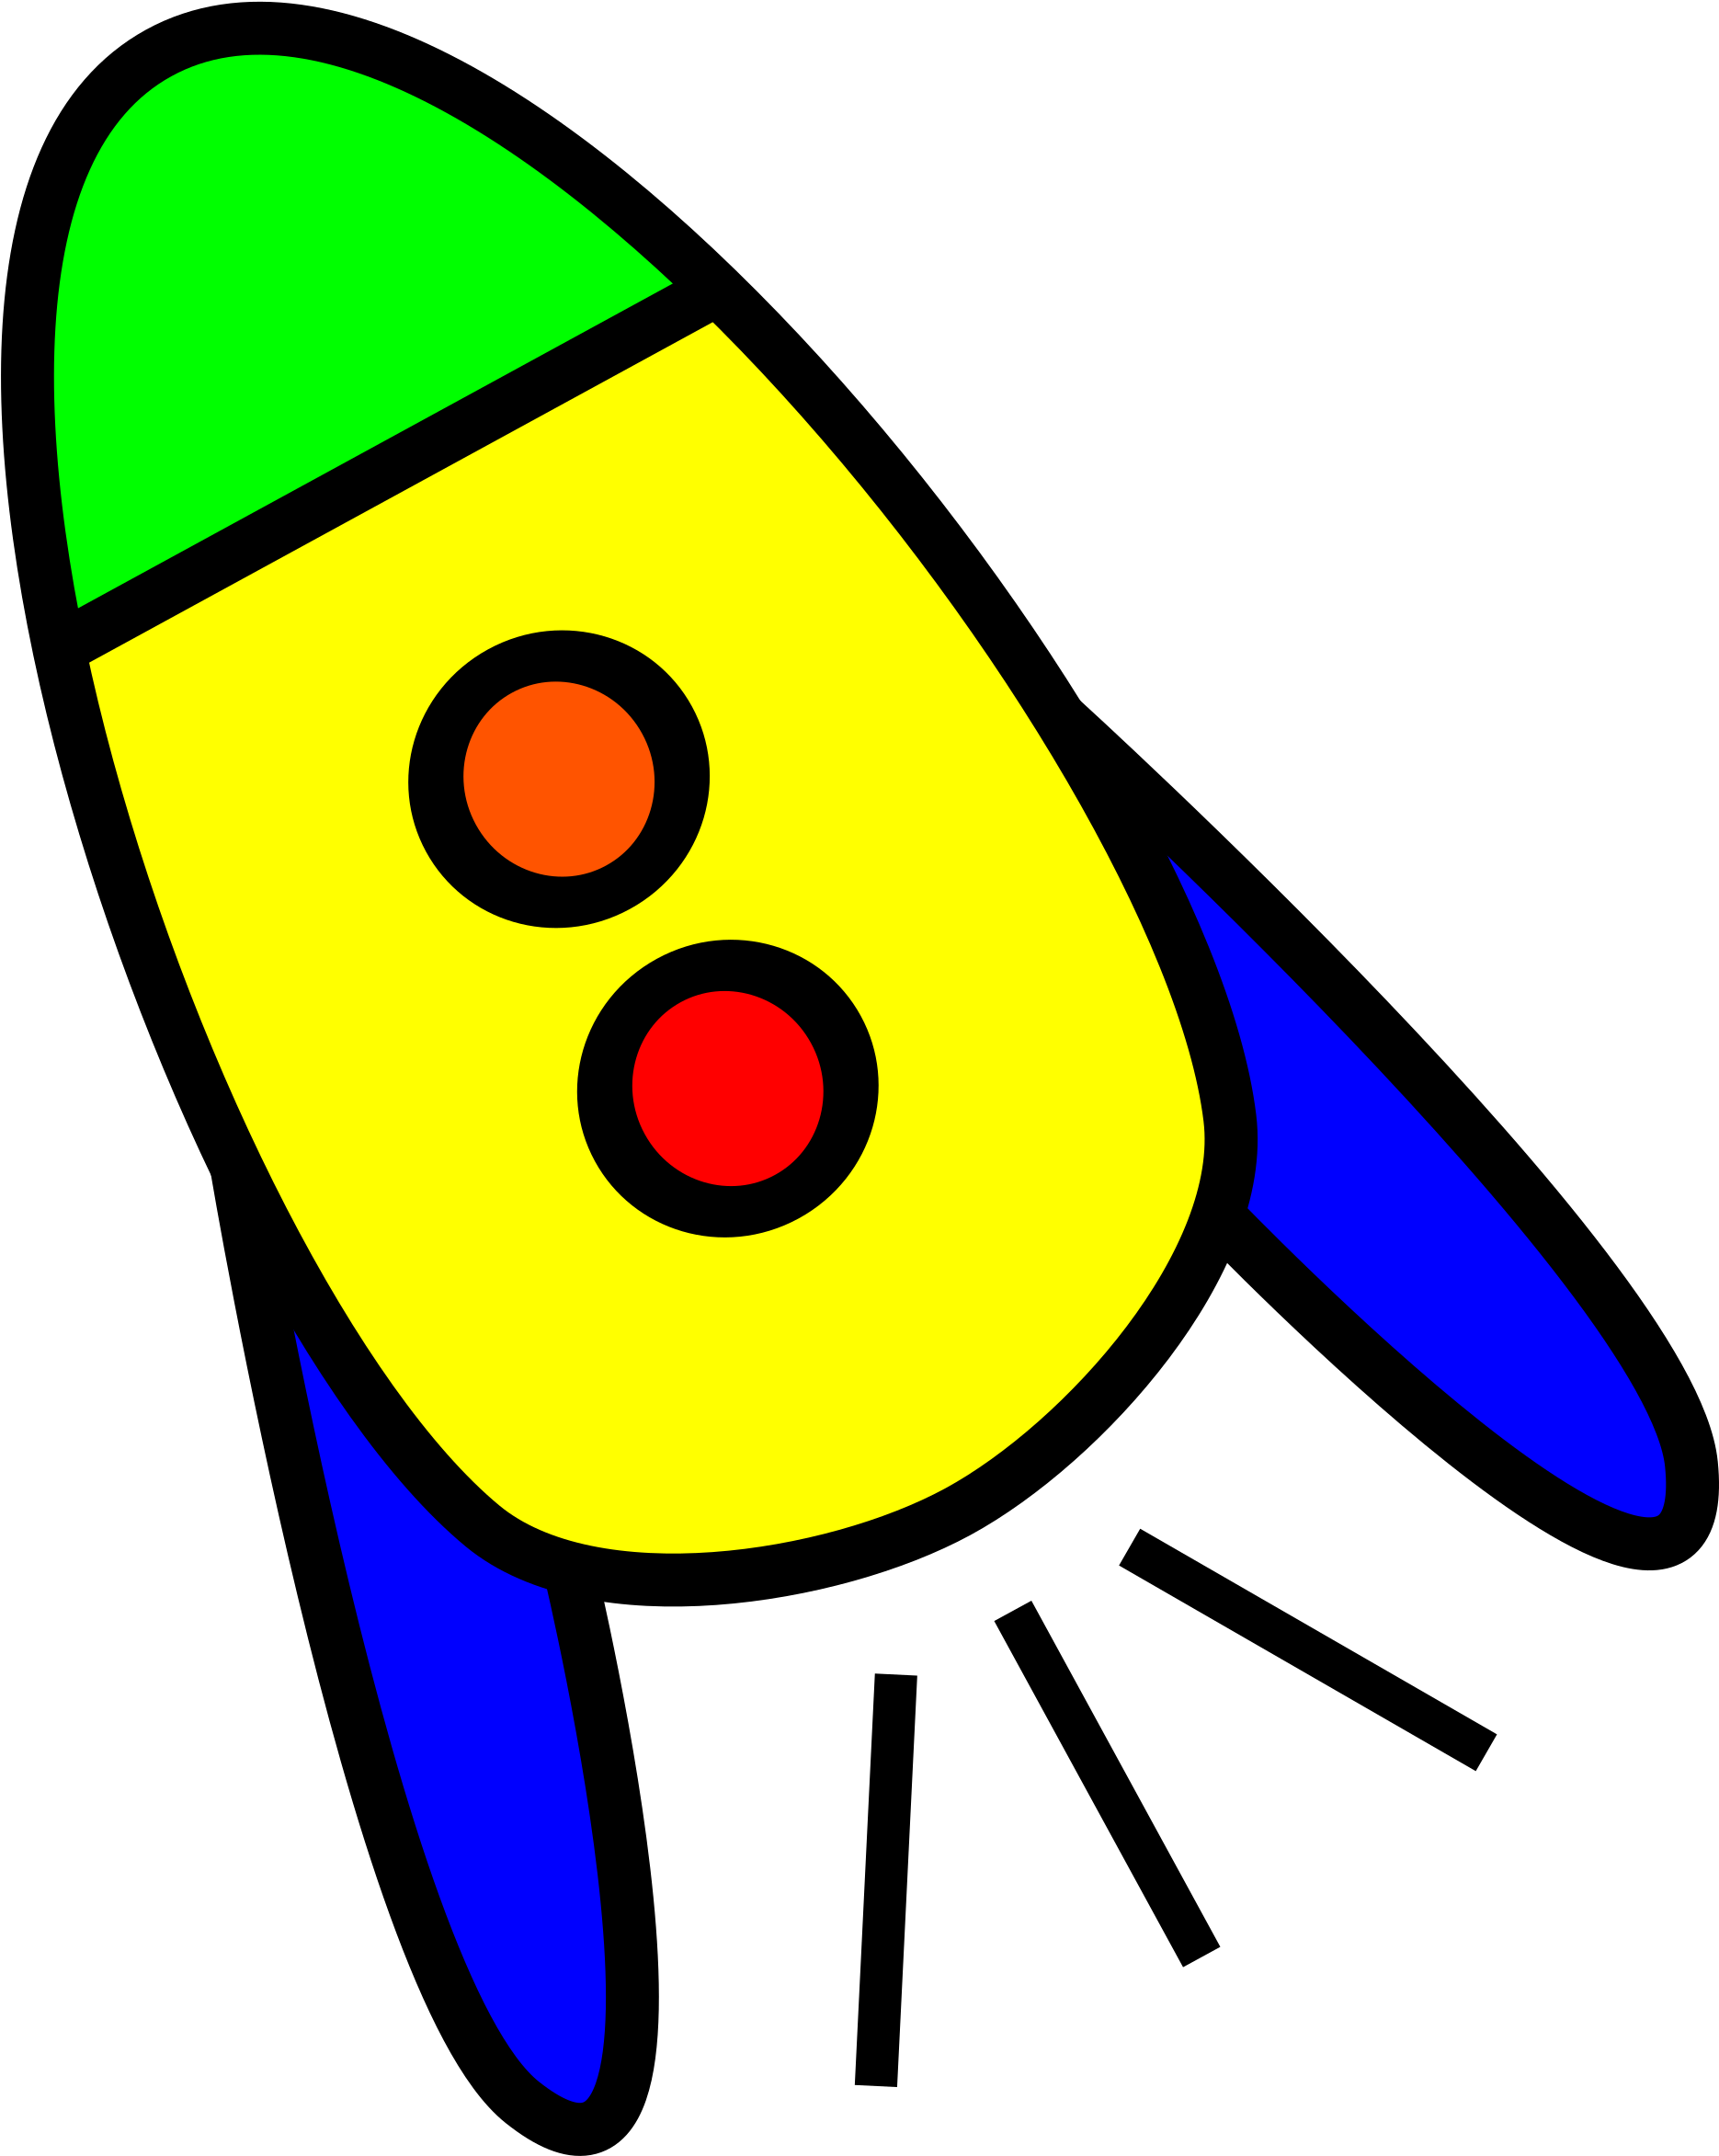 Картинки ракеты для детей дошкольного возраста. Ракета для детей. Ракета рисунок. Изображение ракеты для детей. Космическая ракета картинки для детей.